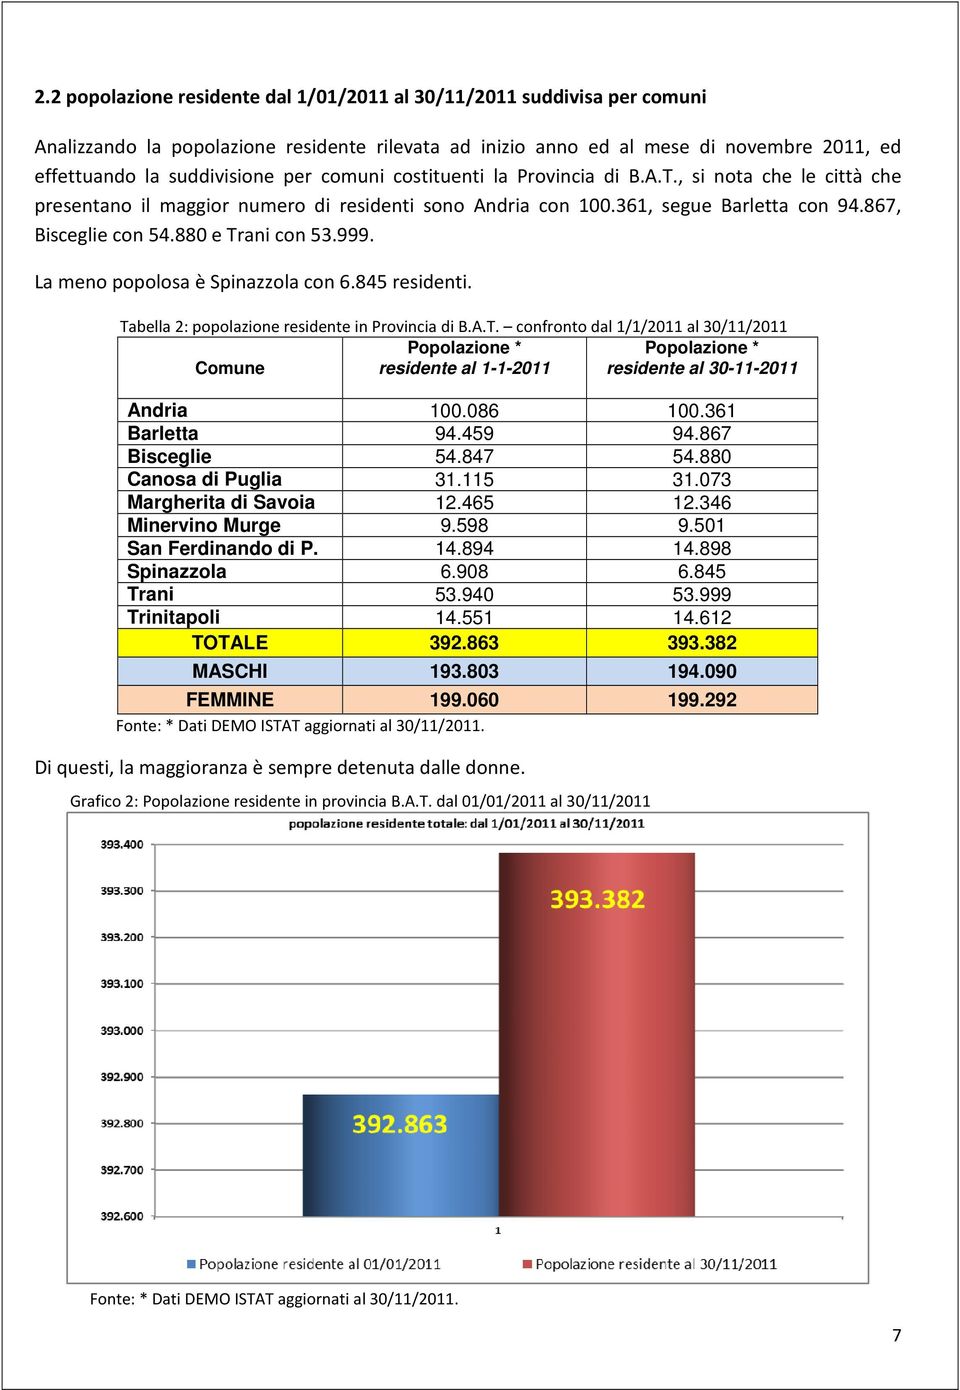 999. La meno popolosa è Spinazzola con 6.845 residenti. Tabella 2: popolazione residente in Provincia di B.A.T. confronto dal 1/1/2011 al 30/11/2011 Comune Popolazione * residente al 1-1-2011 Popolazione * residente al 30-11-2011 Andria 100.